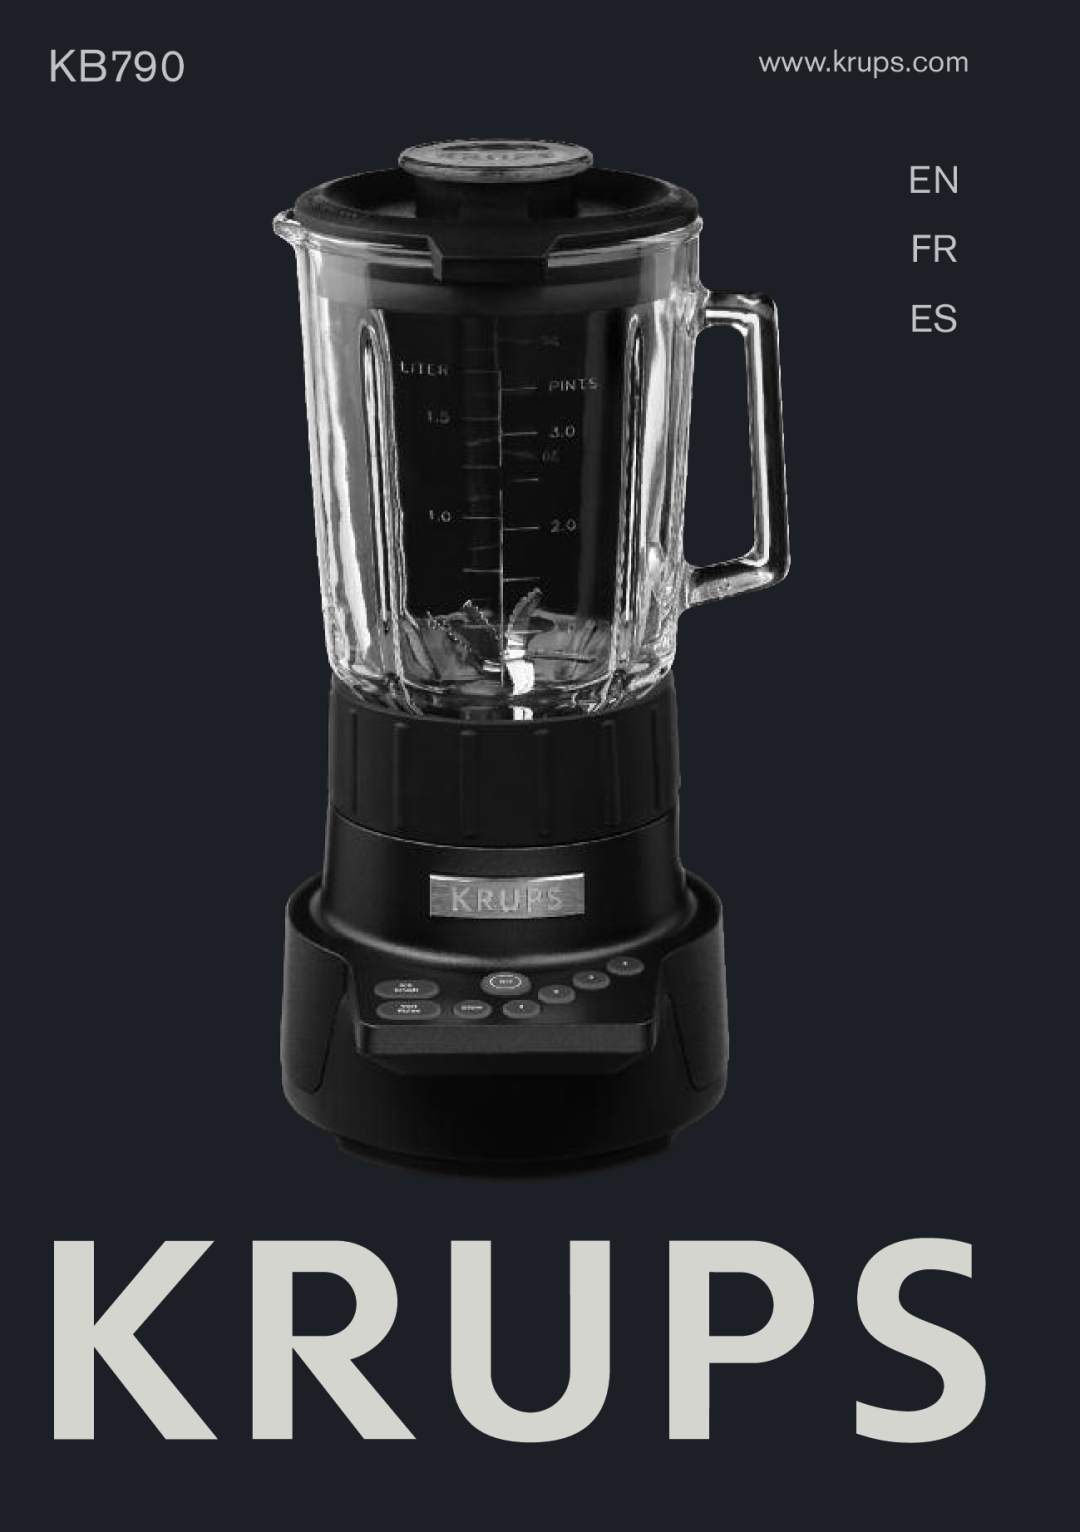 Krups KB790 manual En Fr Es 